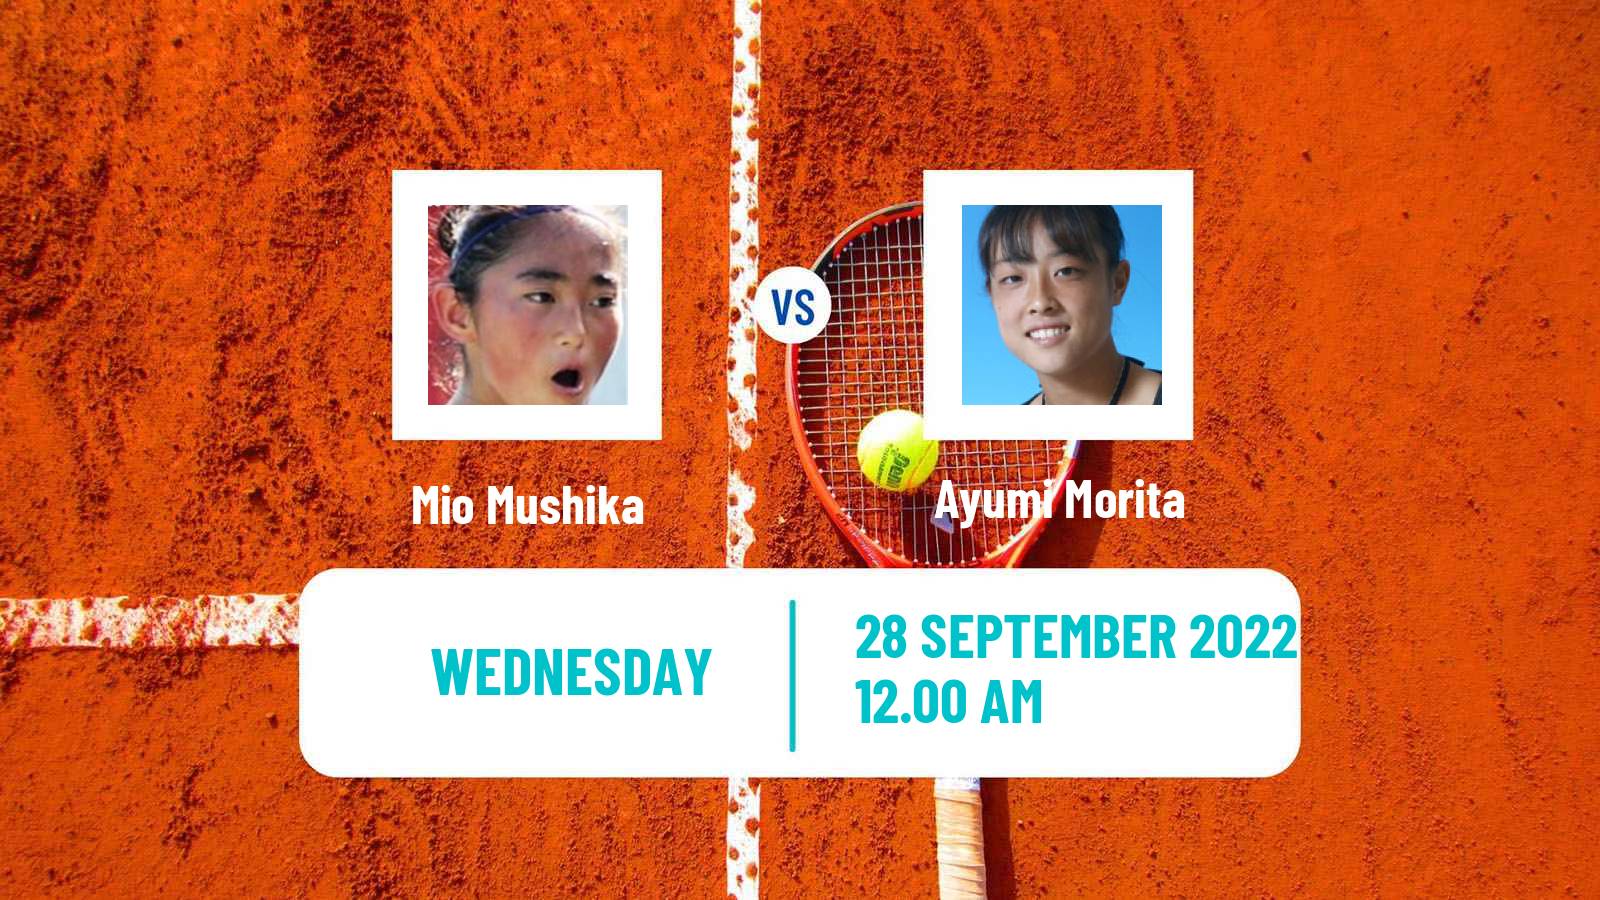 Tennis ITF Tournaments Mio Mushika - Ayumi Morita